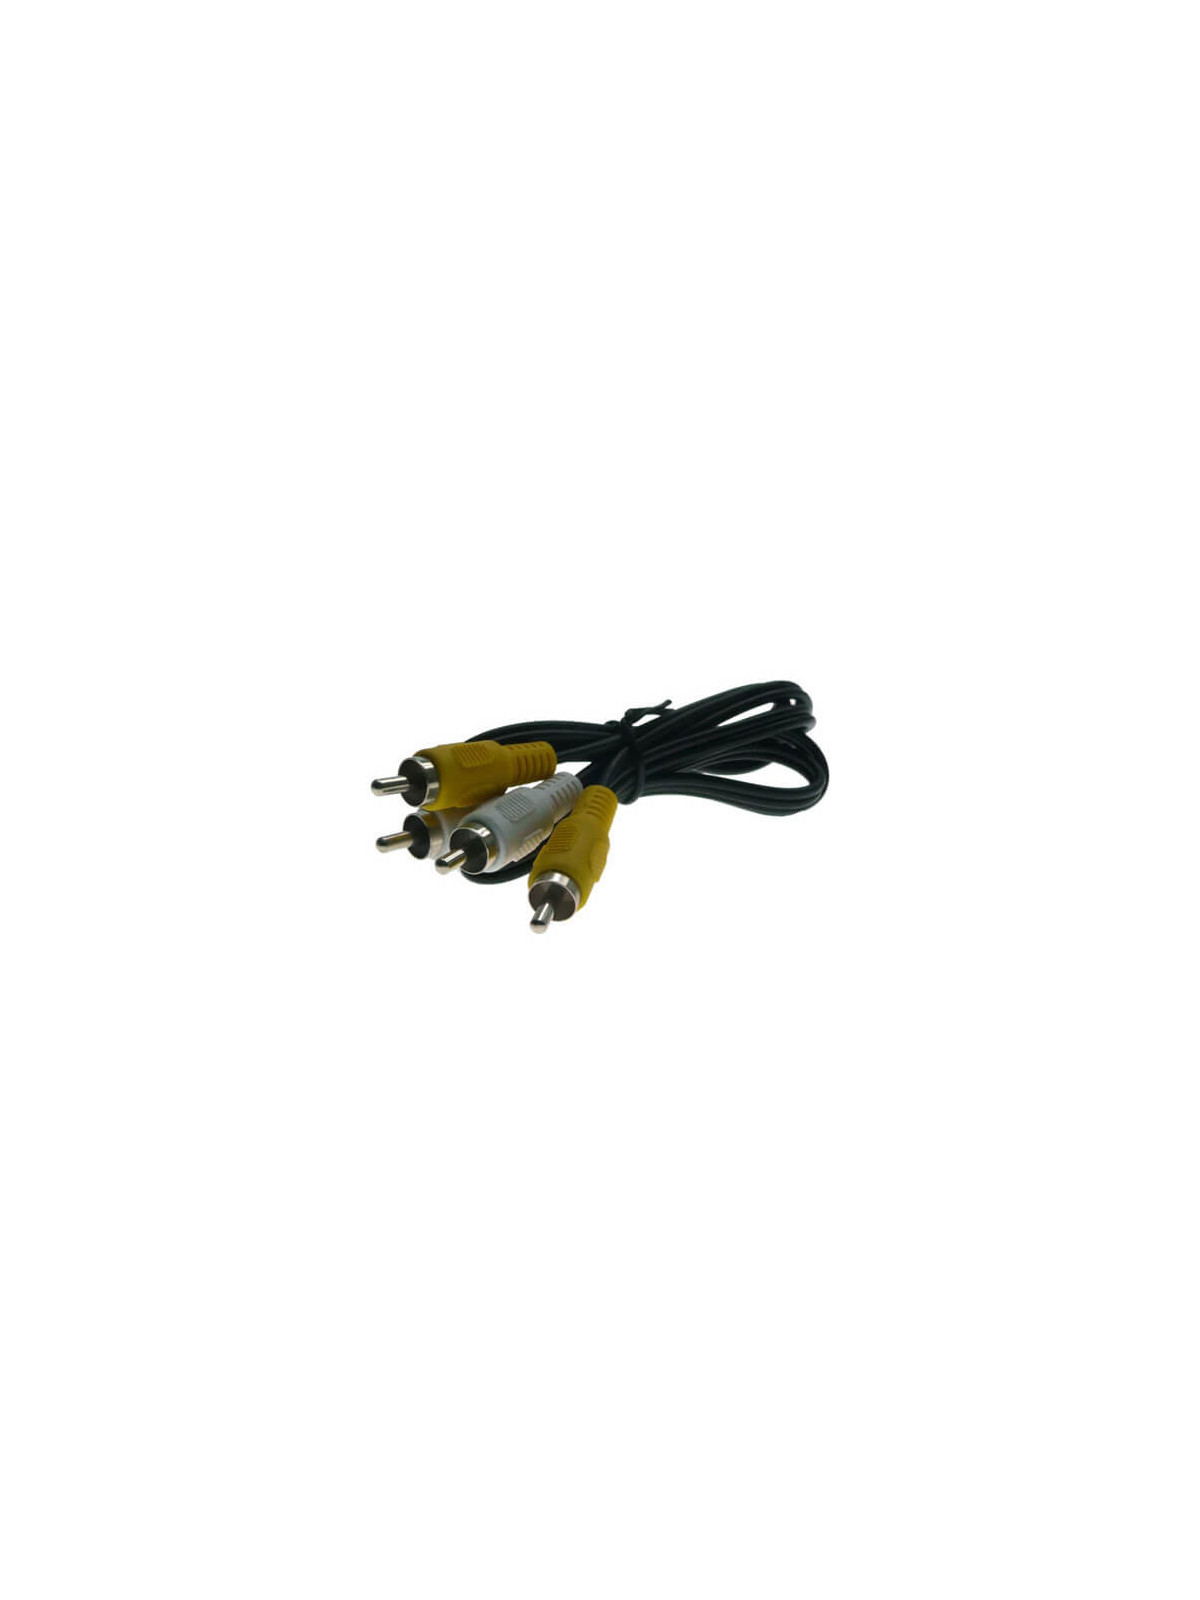 Cable alargo  RCAx2 negro (1.5m)